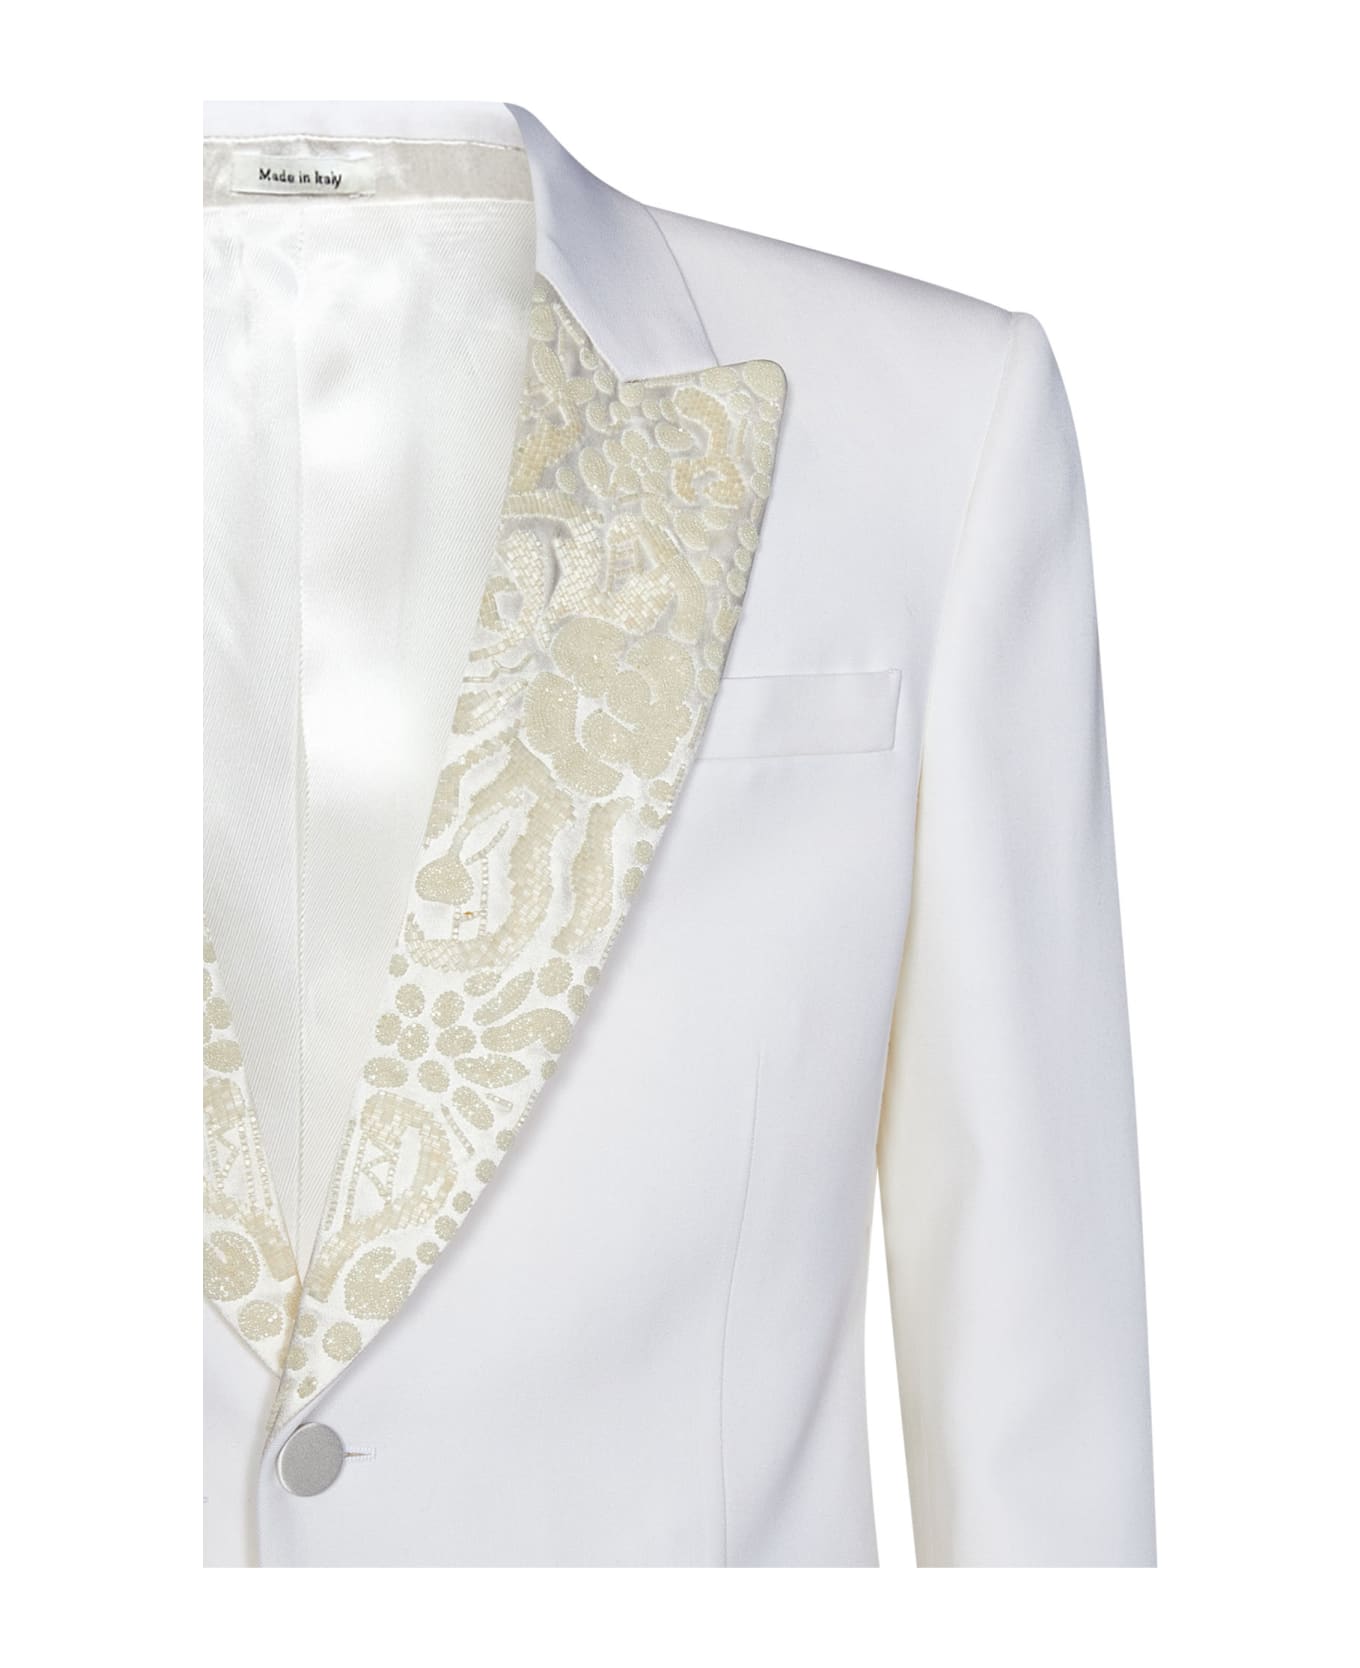 Alexander McQueen Blazer - White スーツ